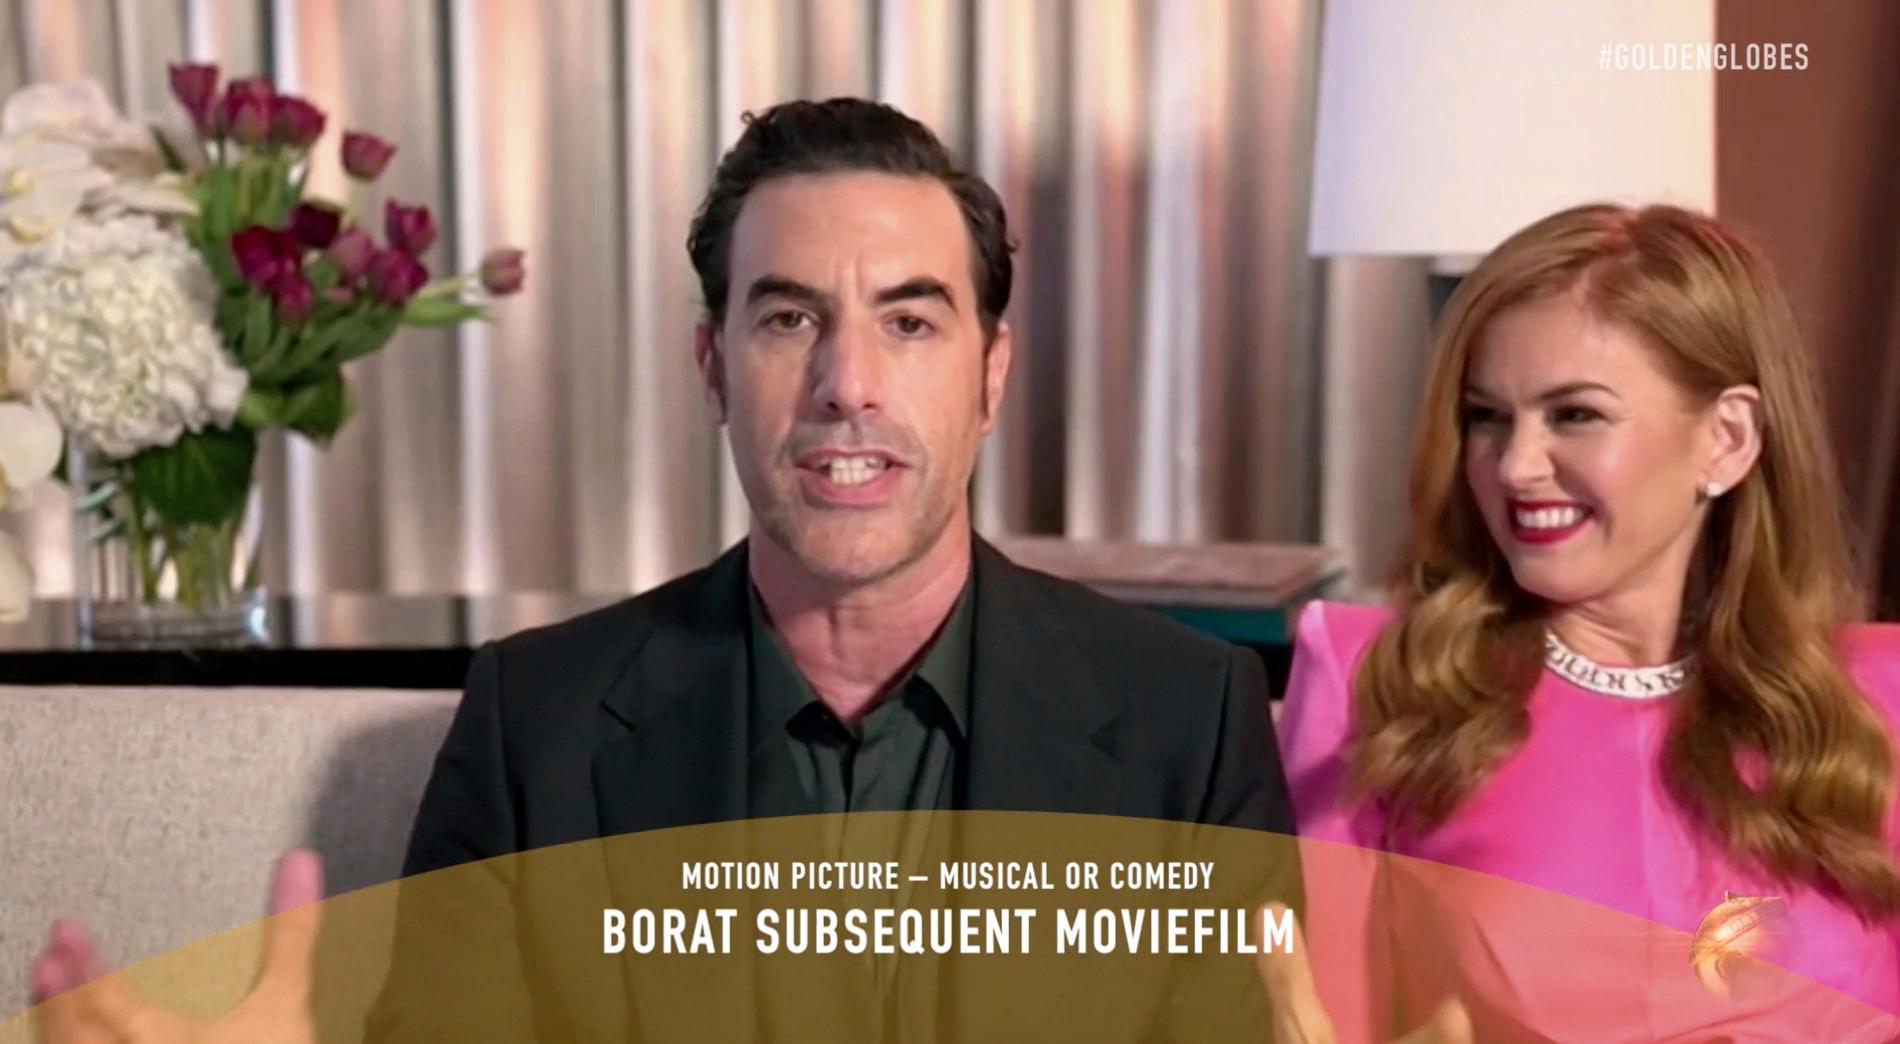 På filmsidan blev förutom ”Nomadland” (bästa film, drama, och bästa regi) Sascha Baron Cohen den stora vinnaren för andra Borat-filmen.